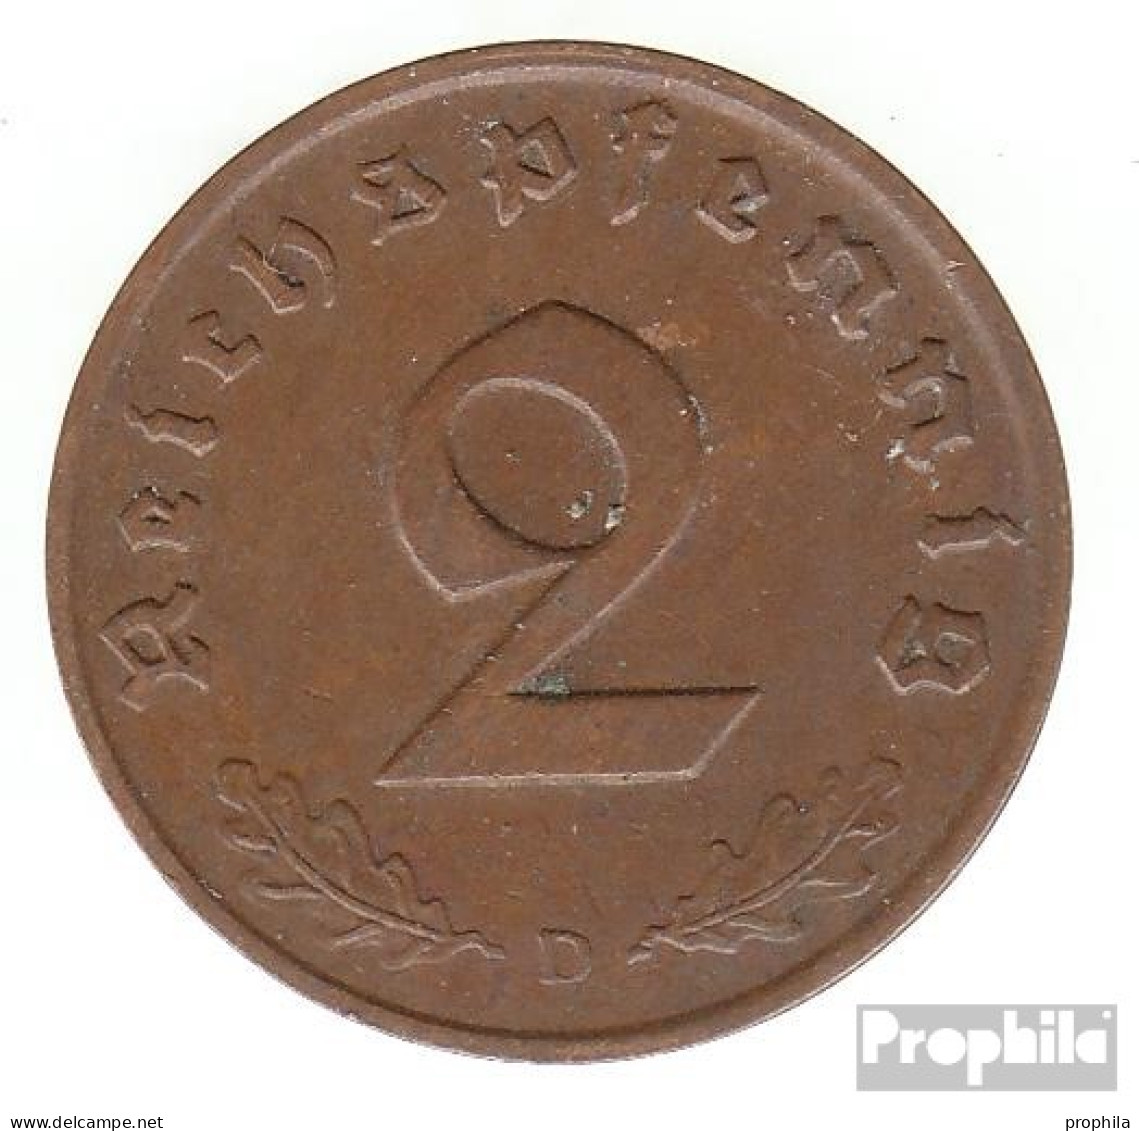 Deutsches Reich Jägernr: 362 1940 A Vorzüglich Bronze Vorzüglich 1940 2 Reichspfennig Reichsadler - 2 Reichspfennig